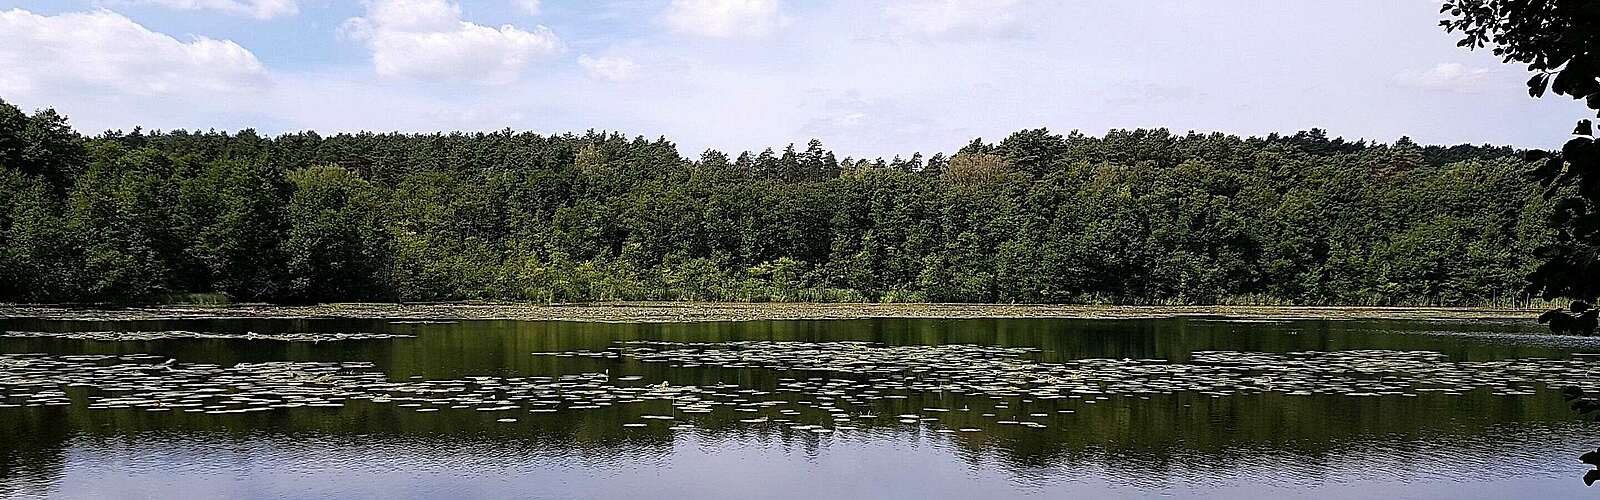 Strehlesee im Naturpark Barnim,
        
    

        Foto: Fotograf / Lizenz - Media Import/Frank Meyer